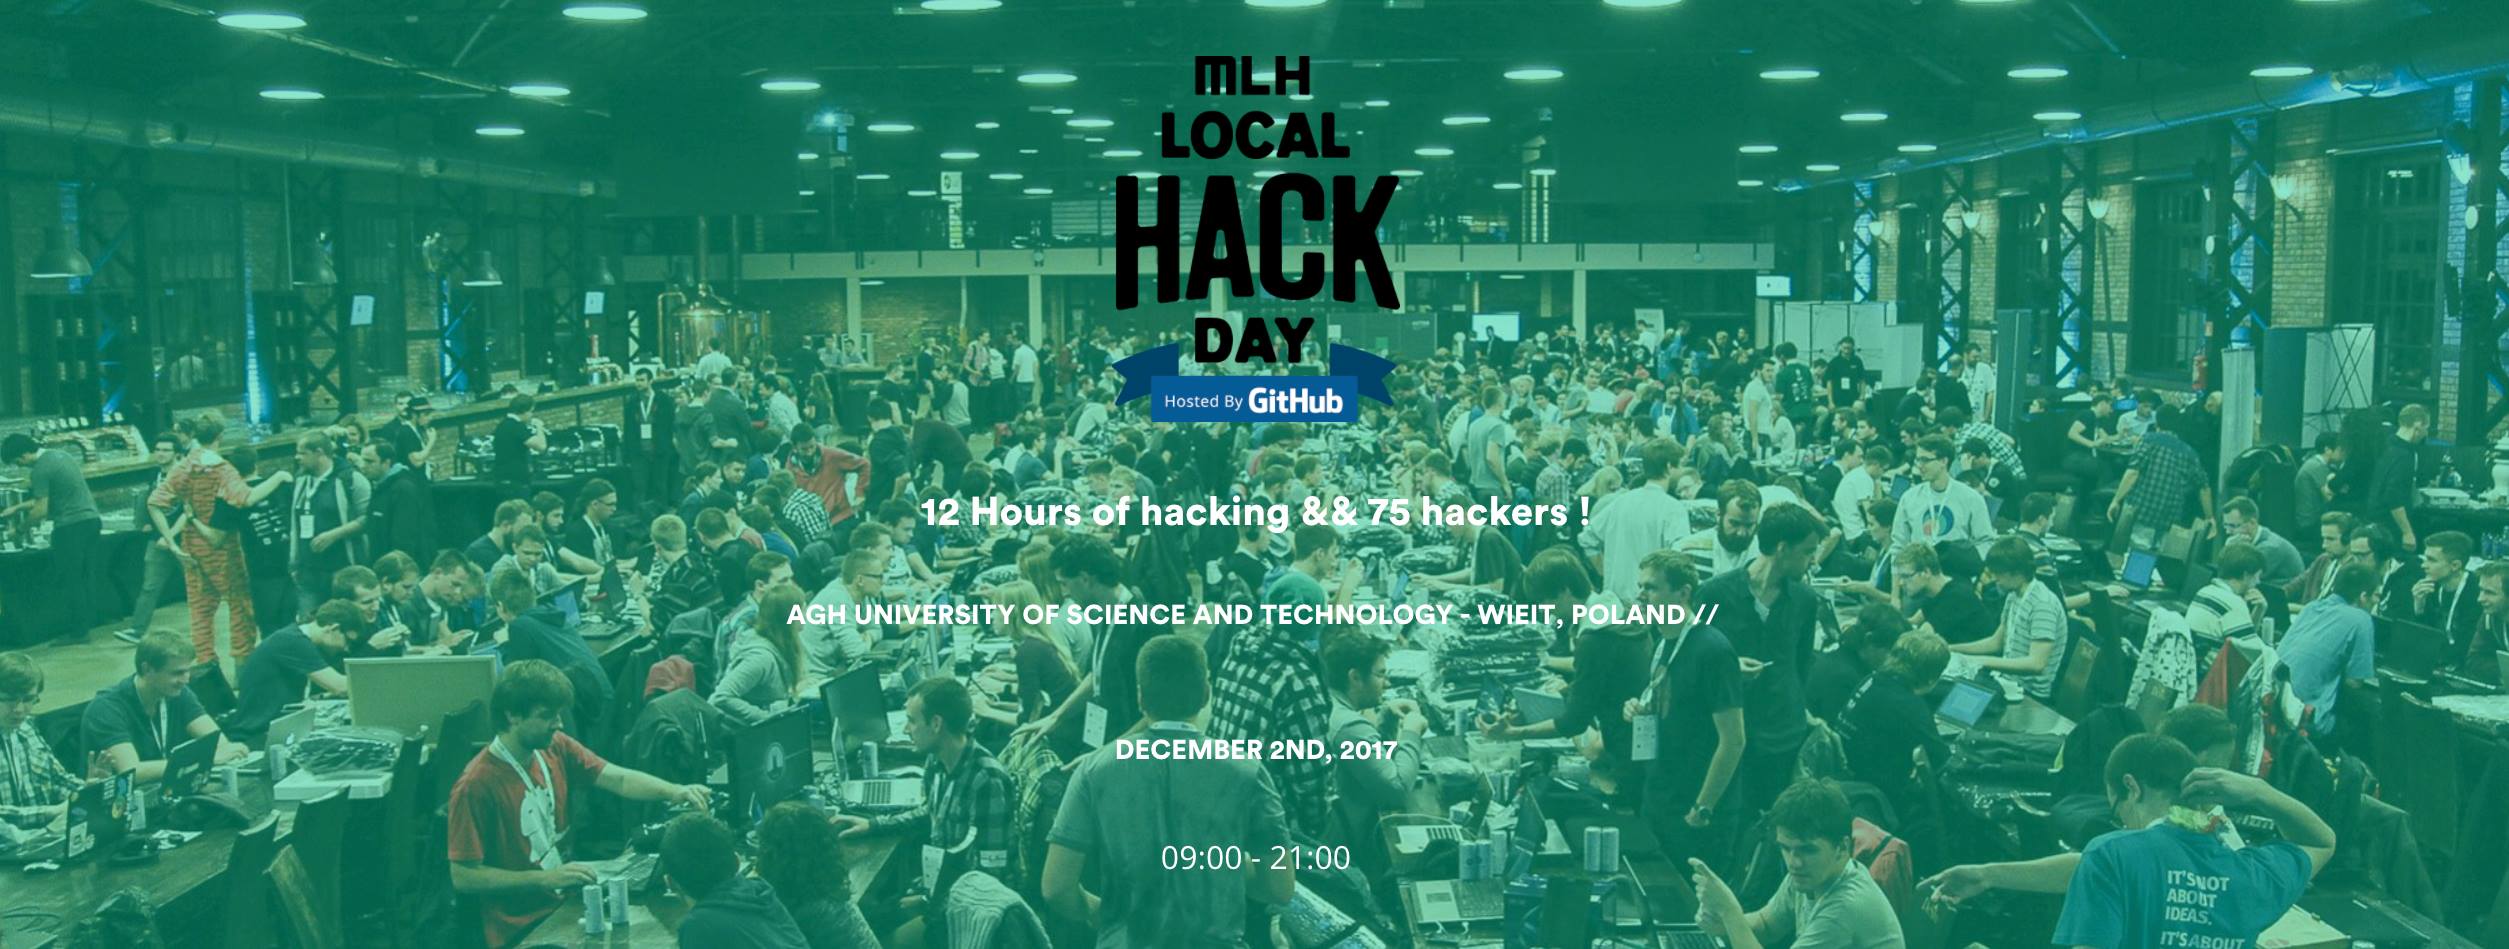 agh-local-hack-day-grudzien-2017